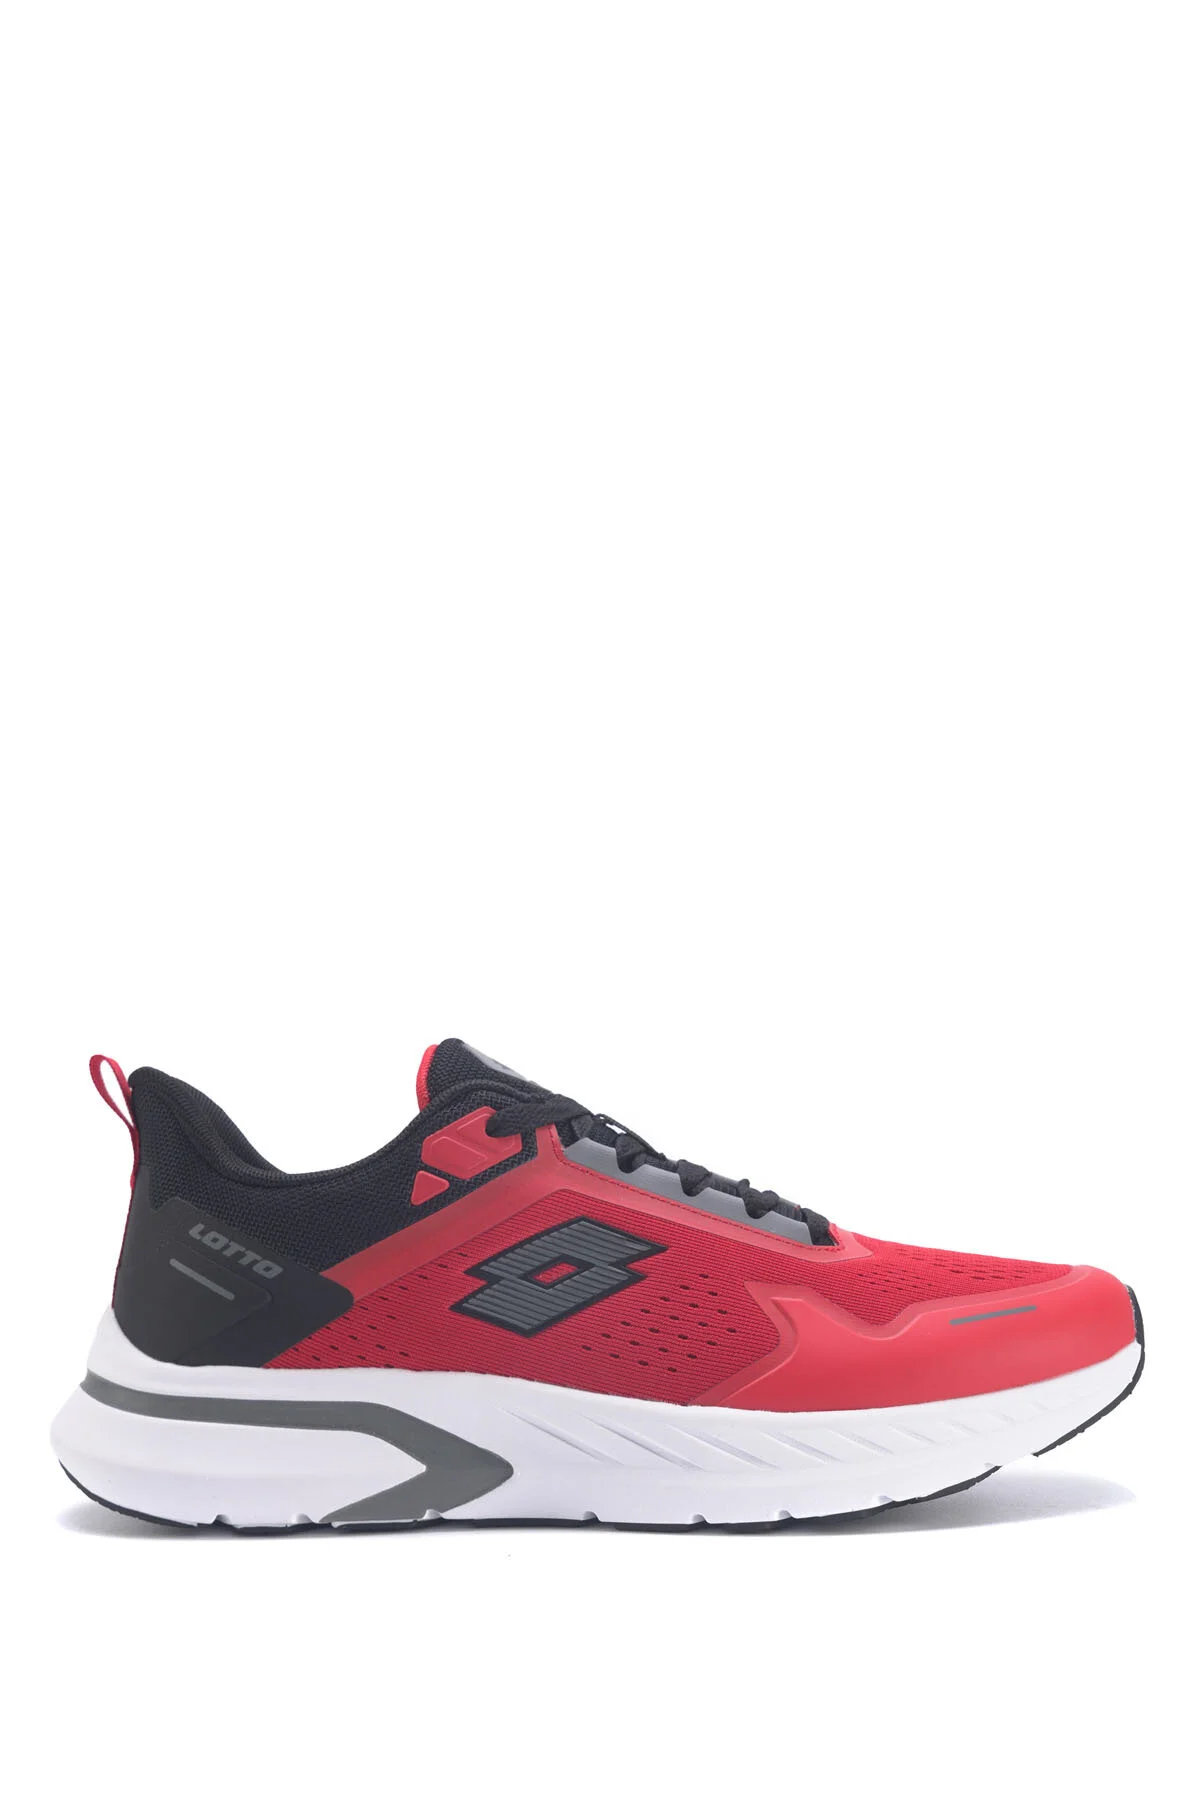 LOVELO 3FX Erkek Koşu Ayakkabısı-Kırmızı - Thumbnail